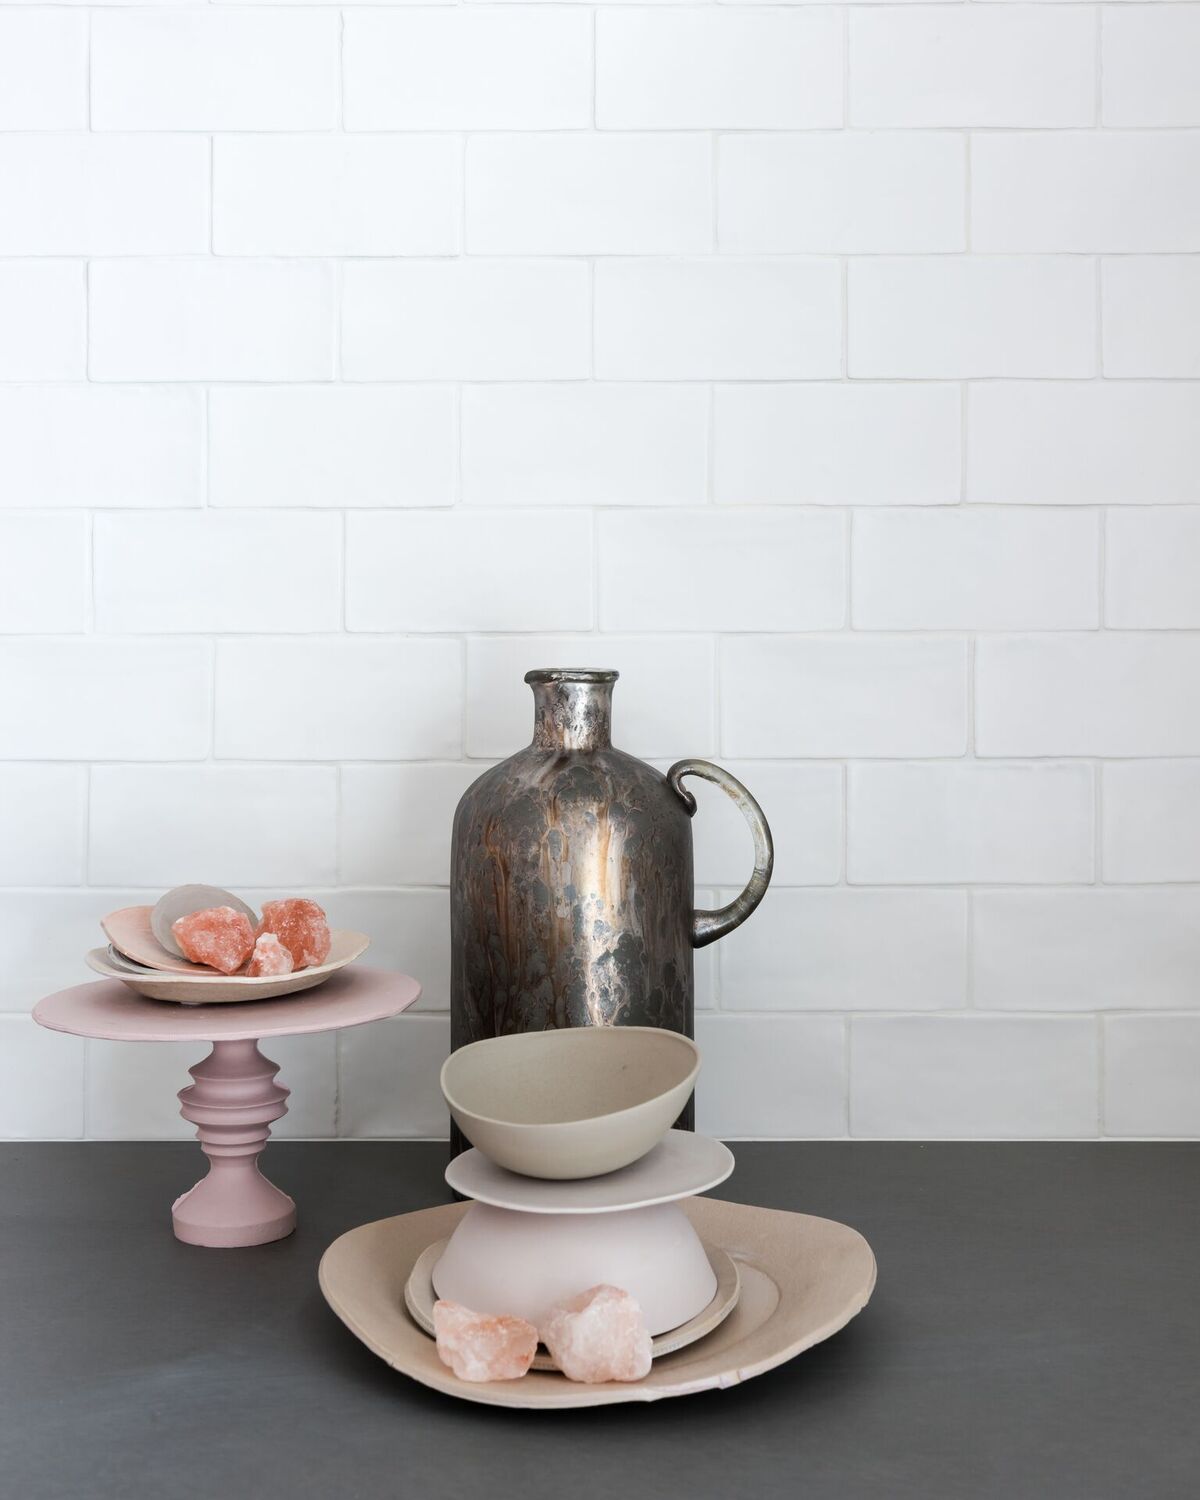 Keuken tegels Piet Boon Tiles & Stones by Douglas & Jones 